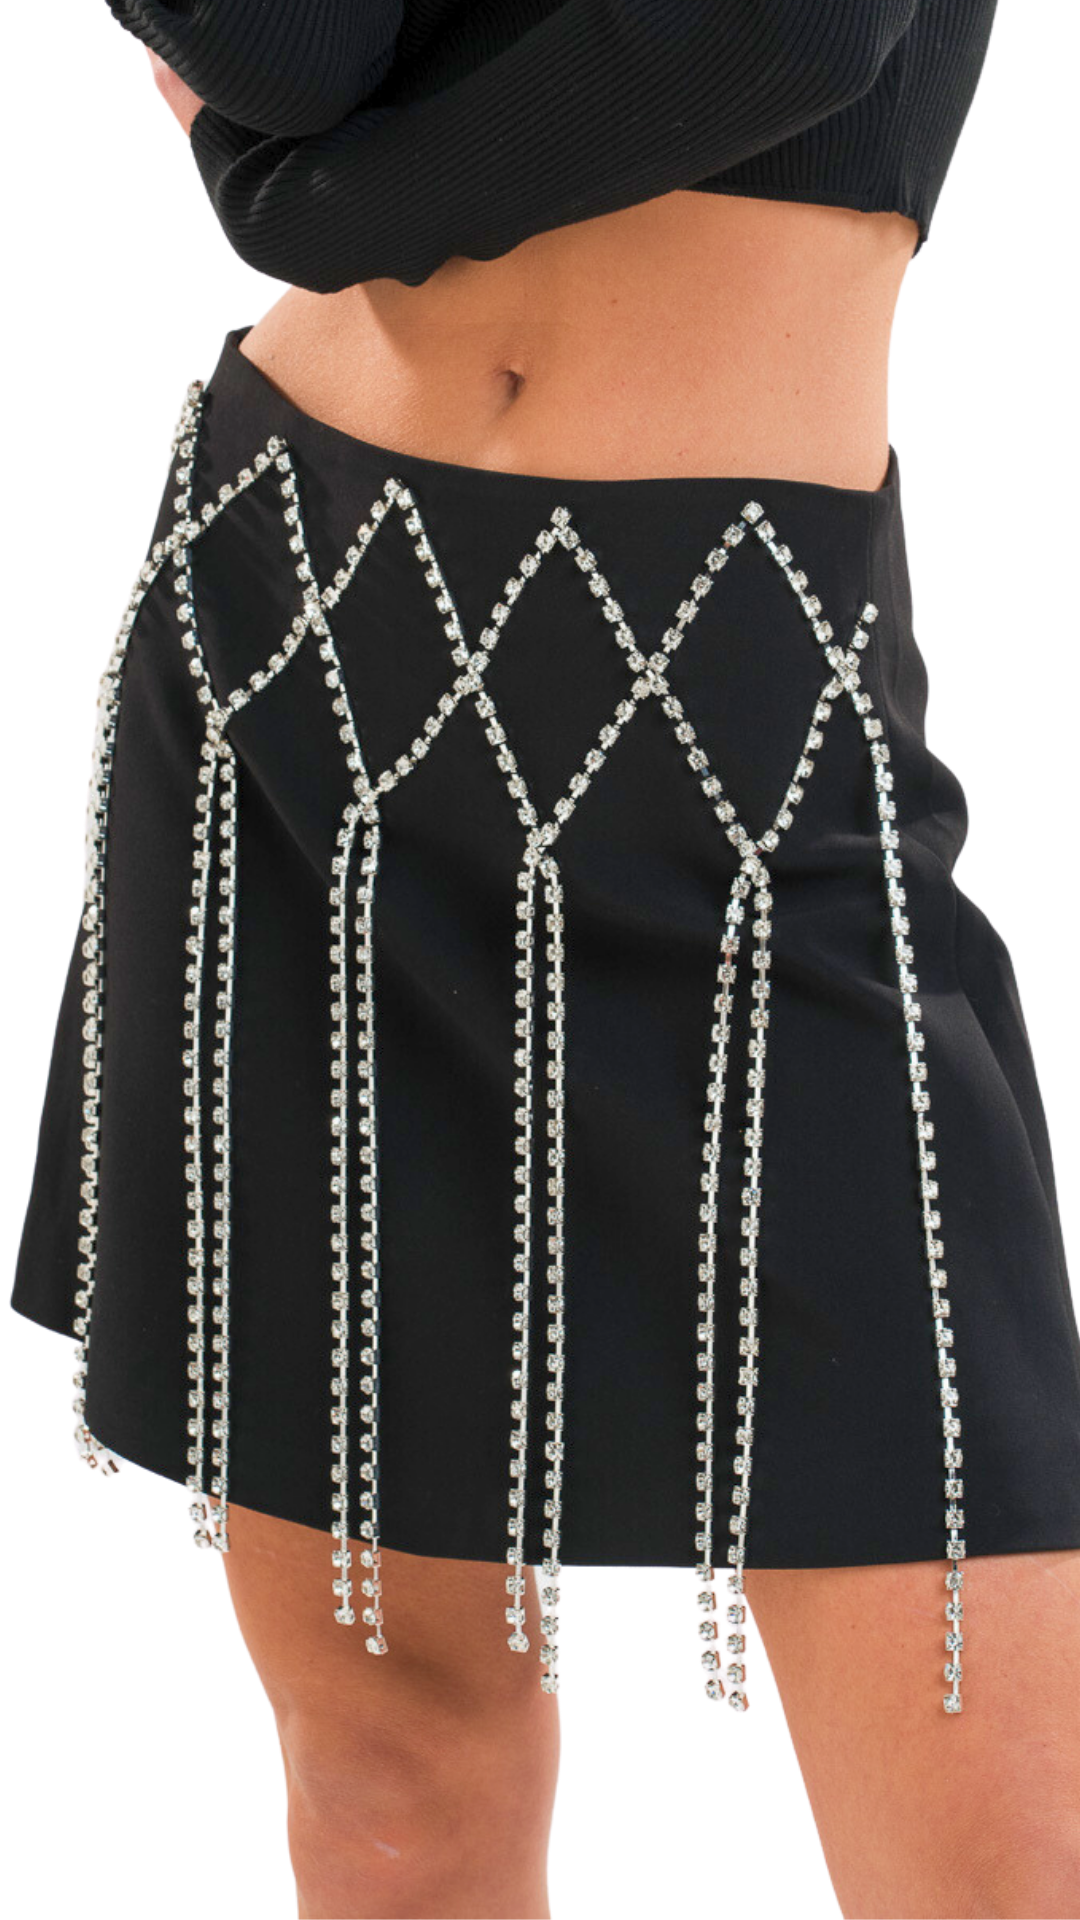 Rhinestone Skirt